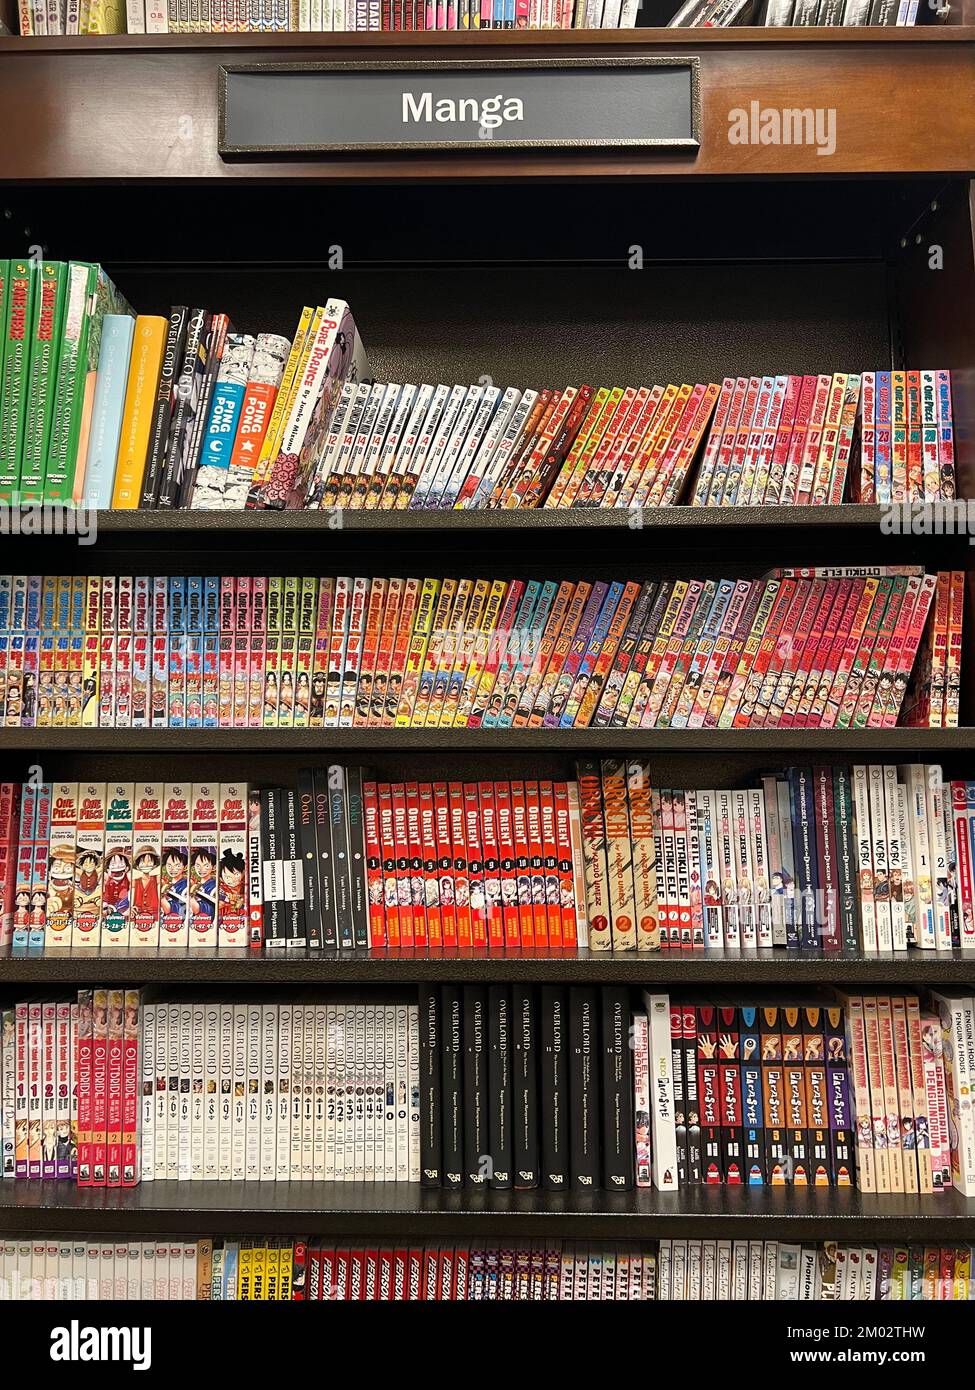 I romanzi grafici del tipo di Manga sono molto popolari come indicato da  questa zona relativamente grande delle librerie ad una libreria in NYC.  Manga (giapponese: 漫画 [maŋga])[a] sono fumetti o graphic